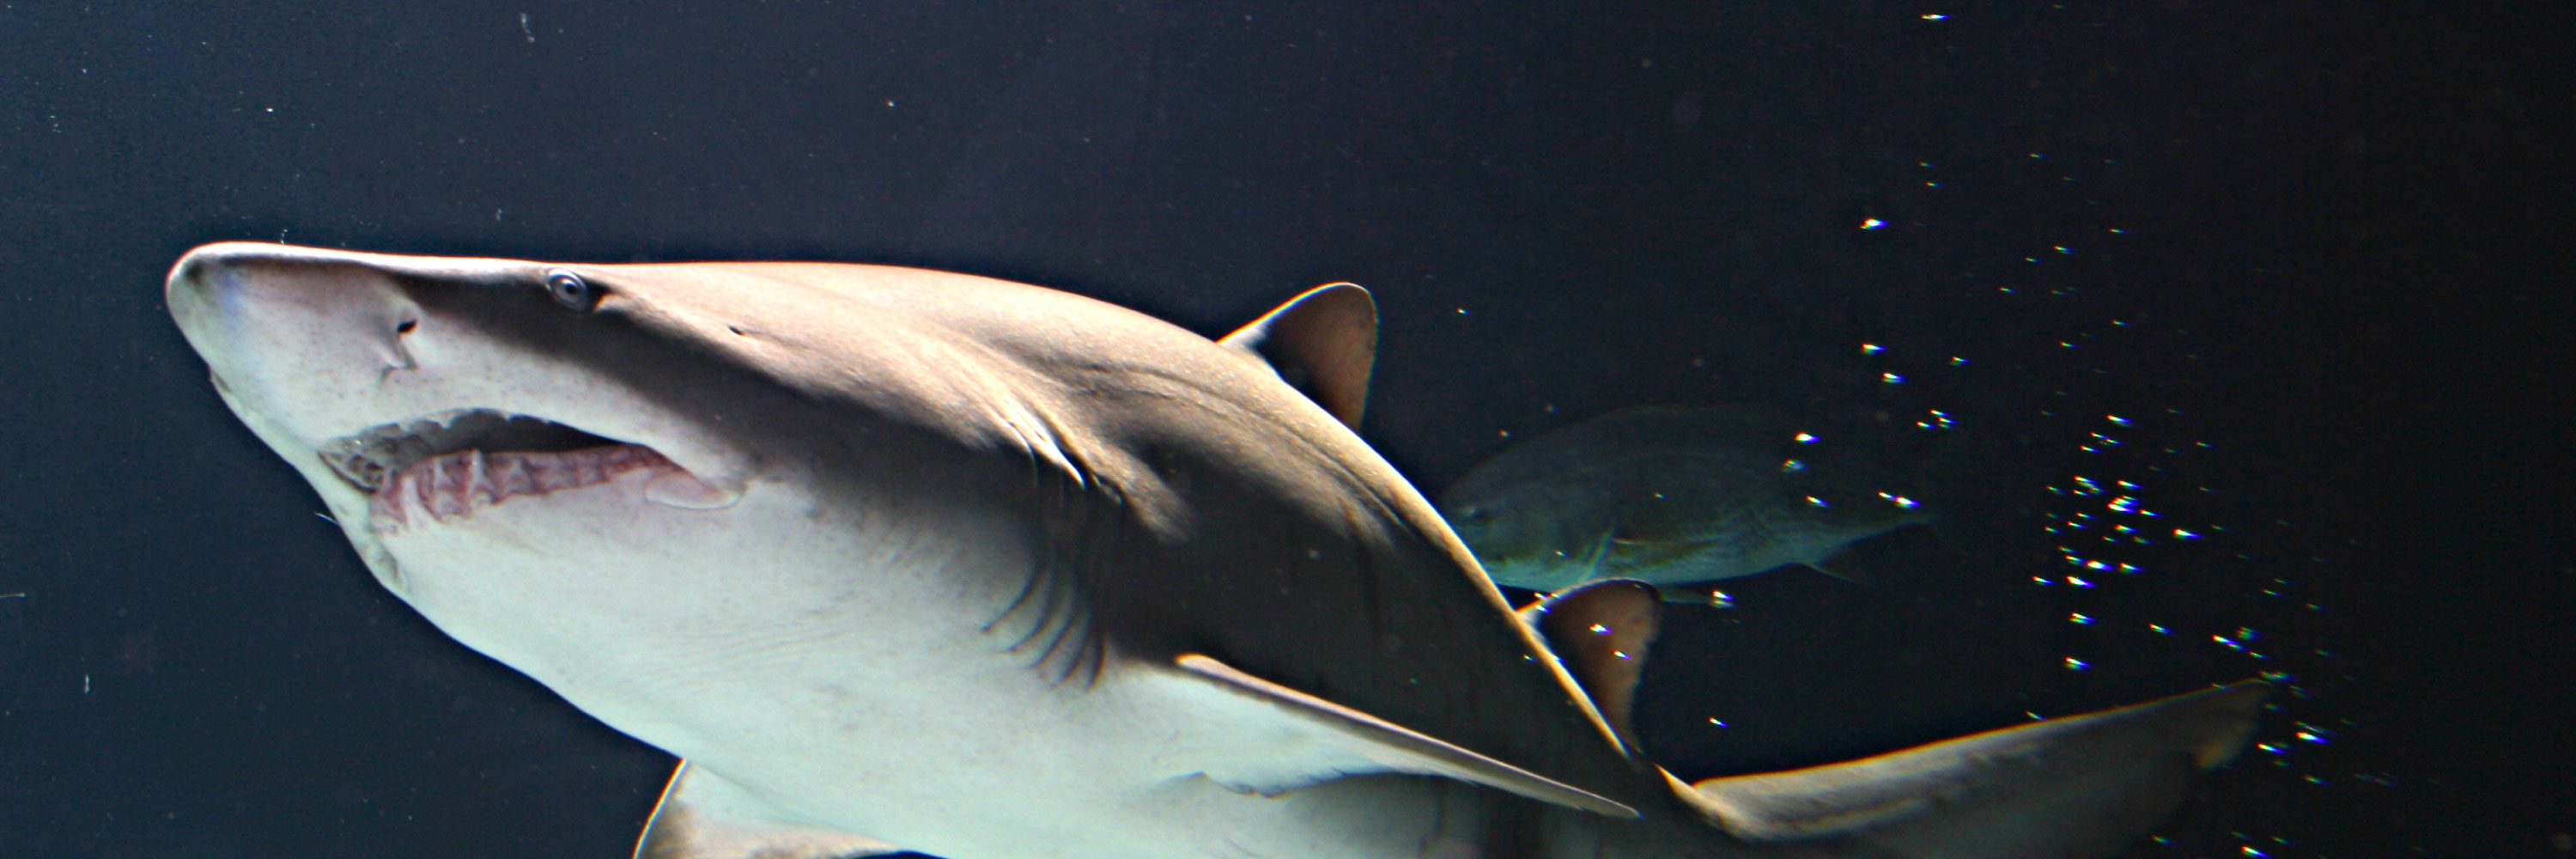 Sharks at SEA LIFE Aquarium